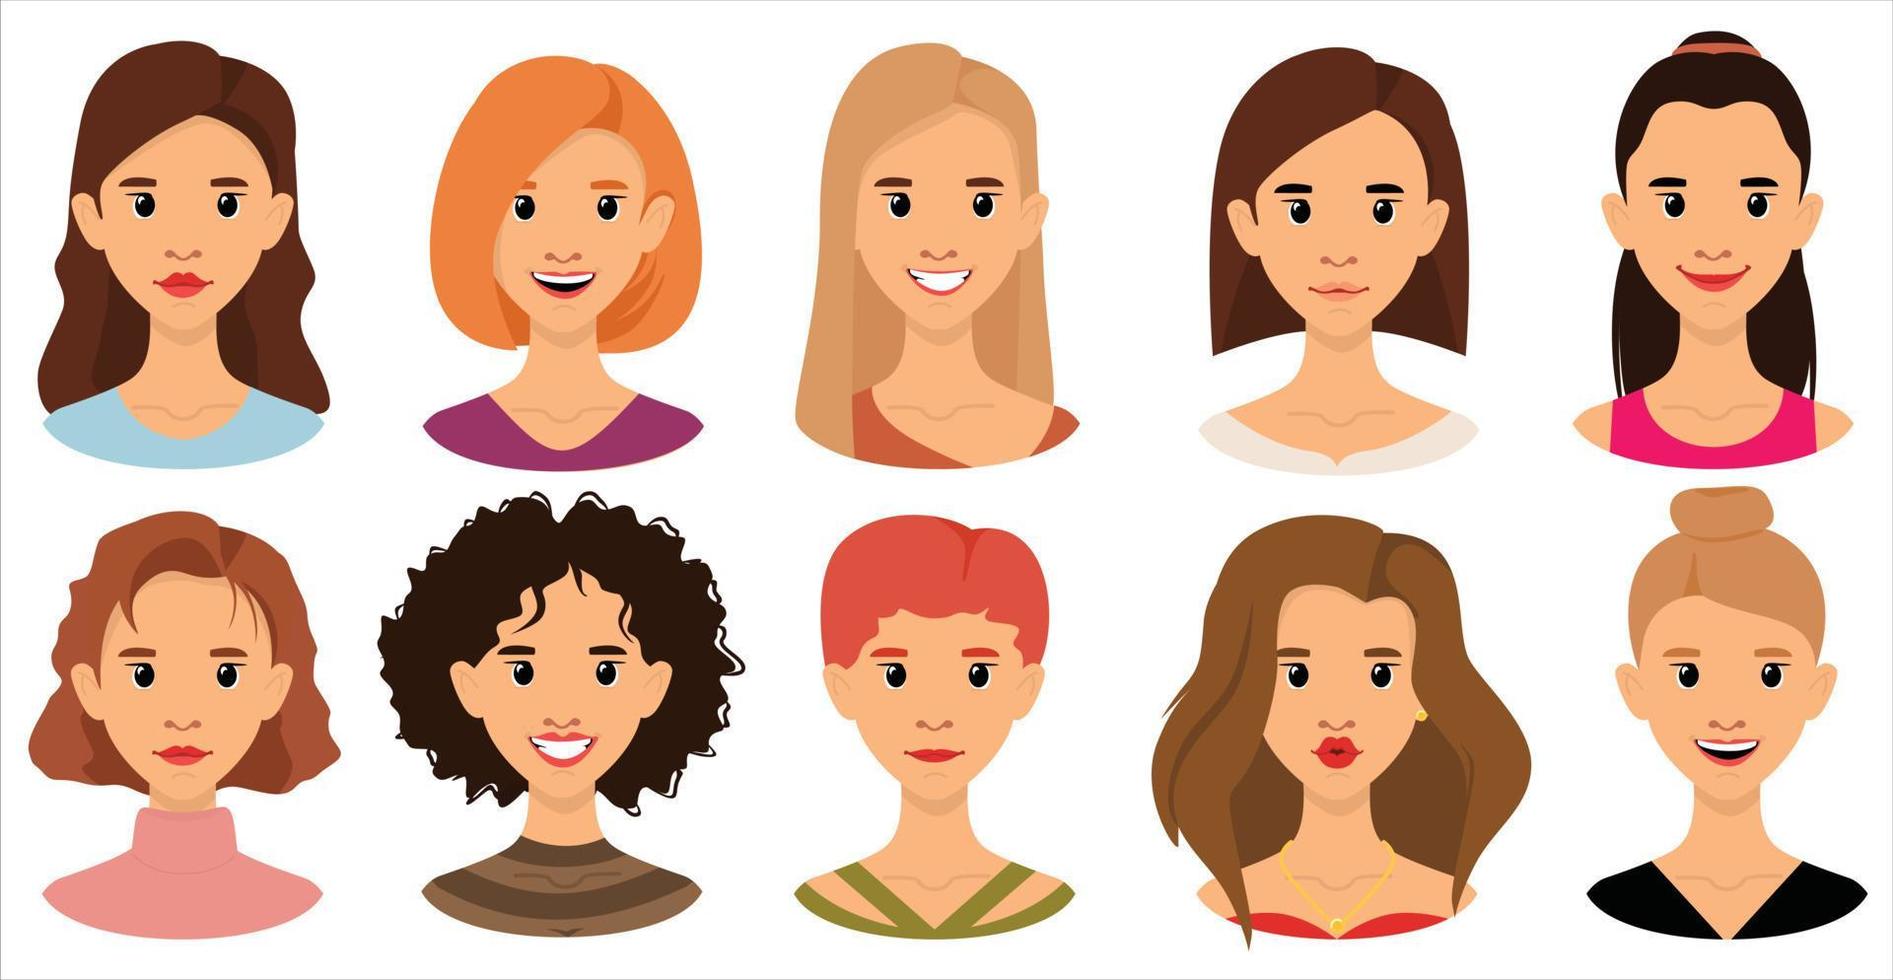 avatar de mujer establece ilustración vectorial plana. retrato de chicas jóvenes con diferentes peinados, hermosas, udybka, diferentes personajes aislados en fondo blanco vector